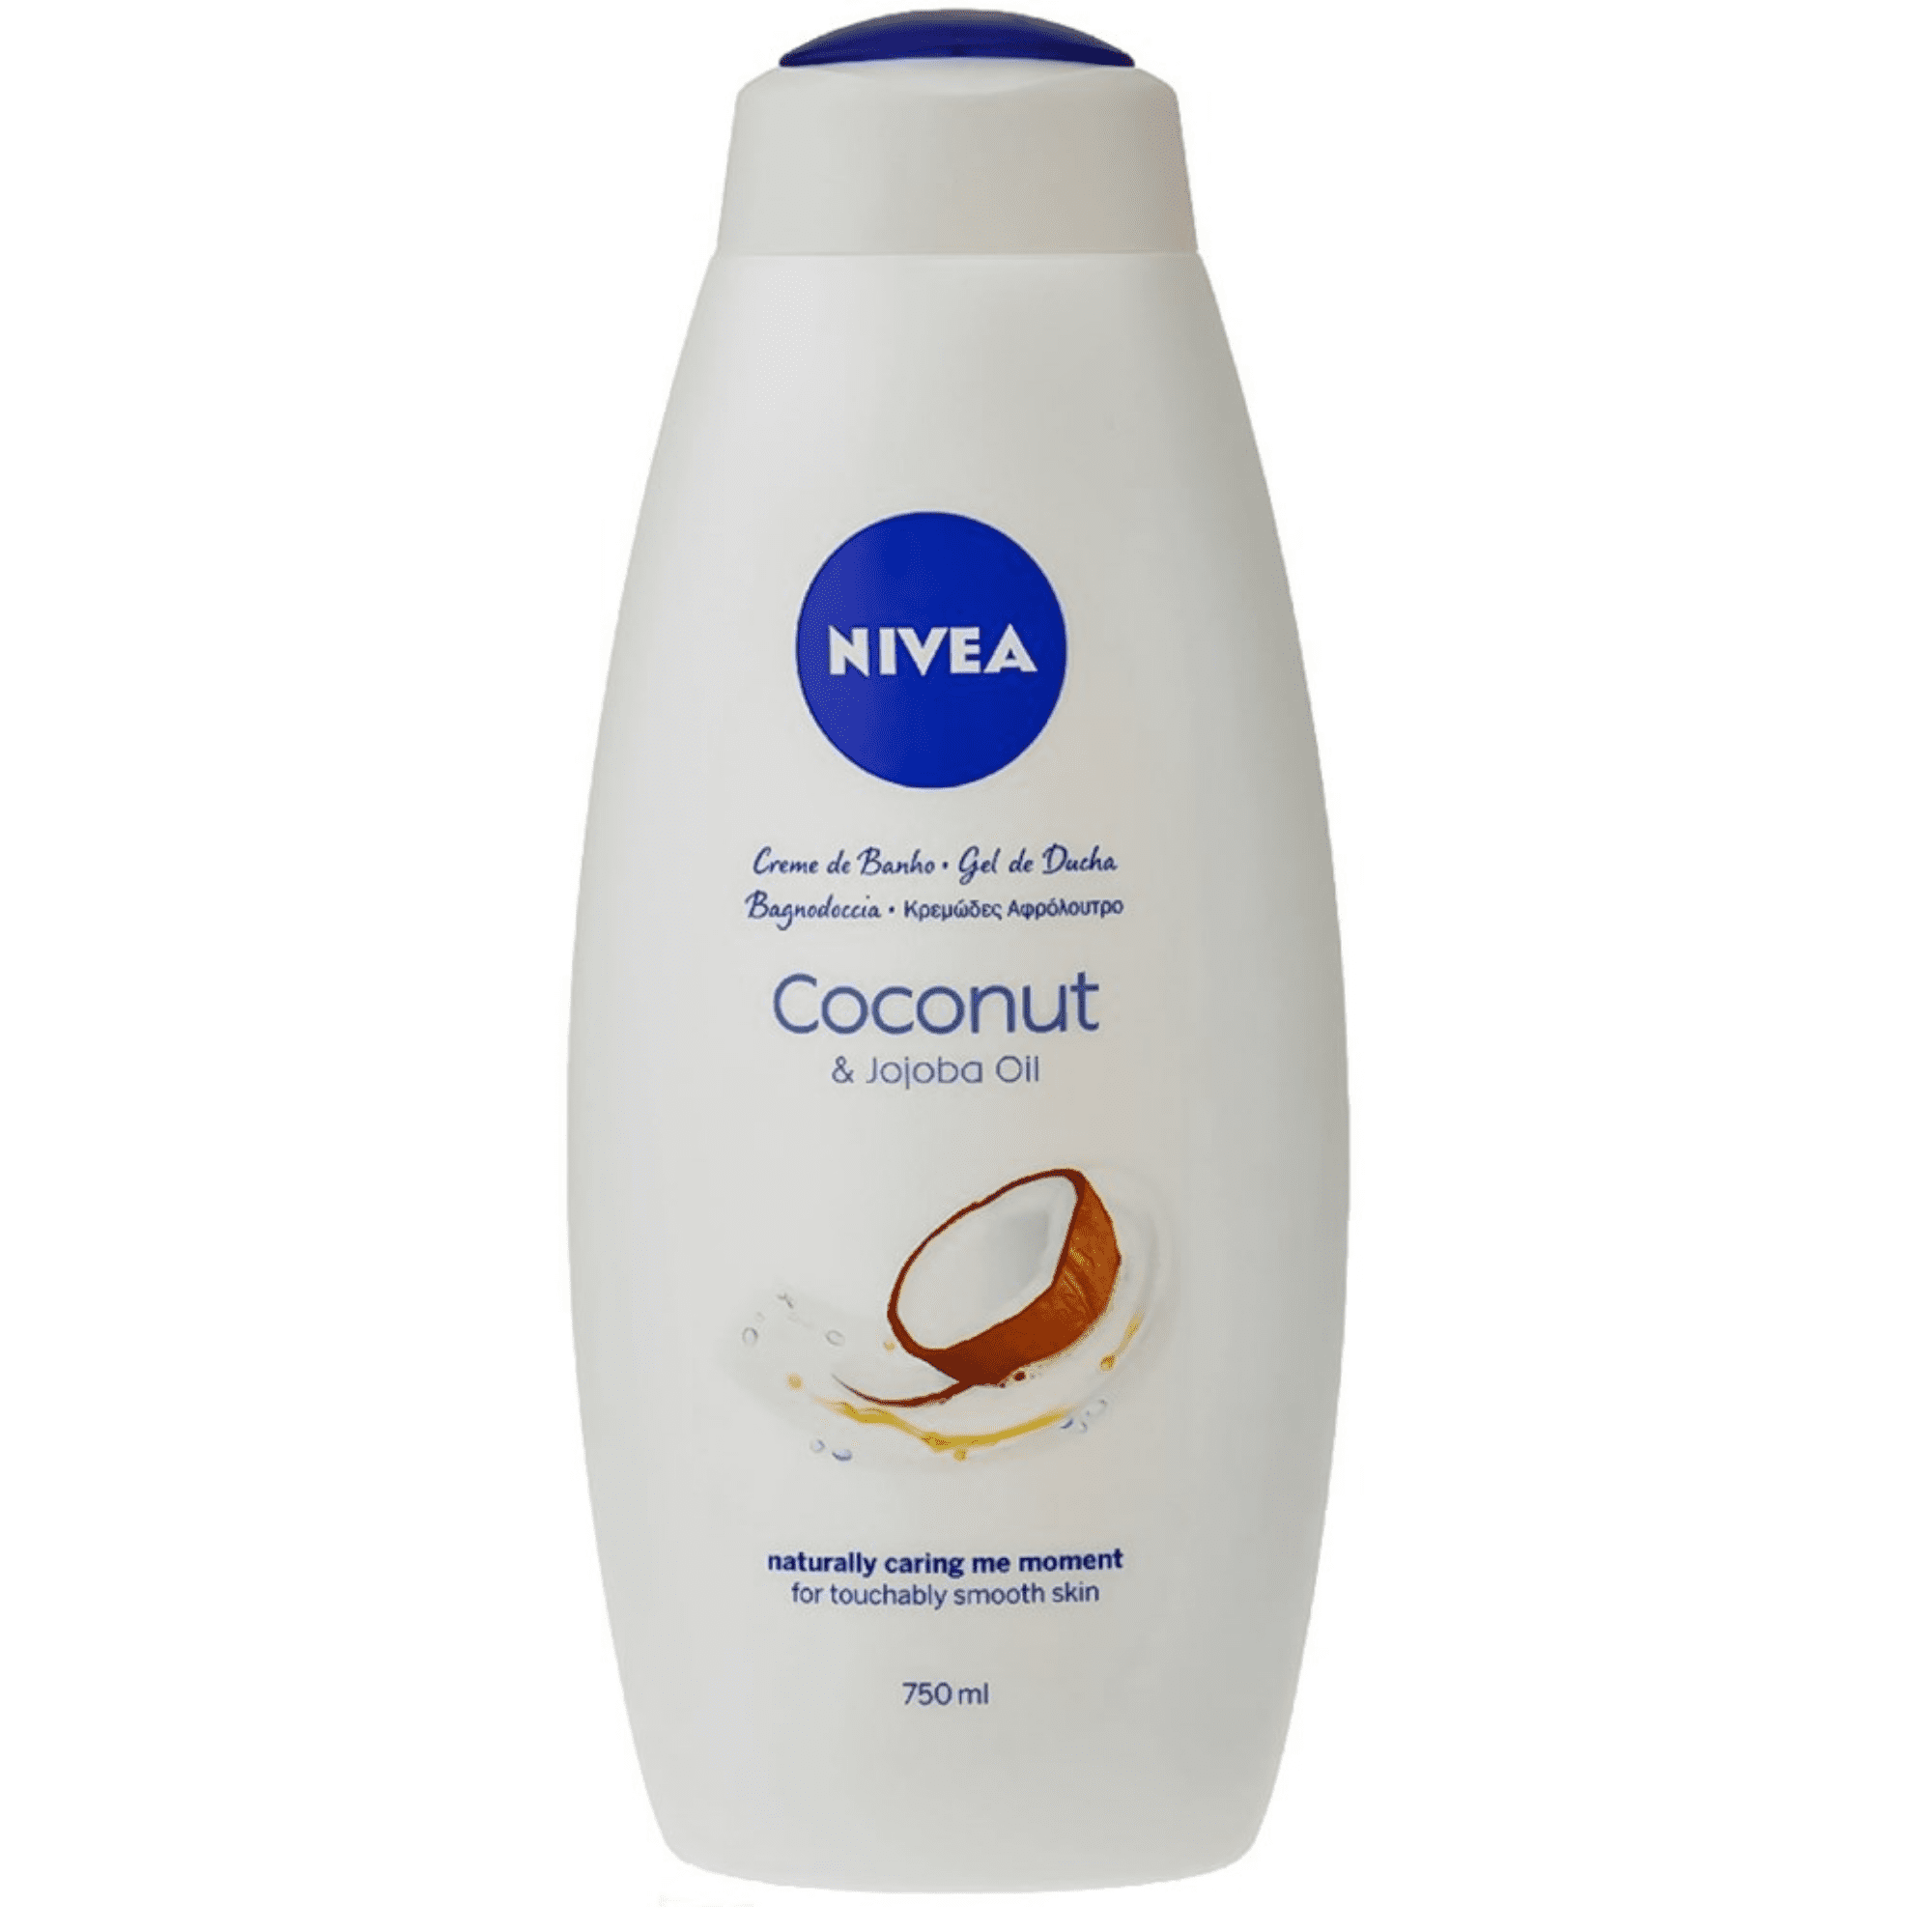 Nivea Care Shower Creme Soft. Кокосовое масло нивея для тела. Гель хохоба. Нивея софт жожоба 50 мл. Shower cream gel